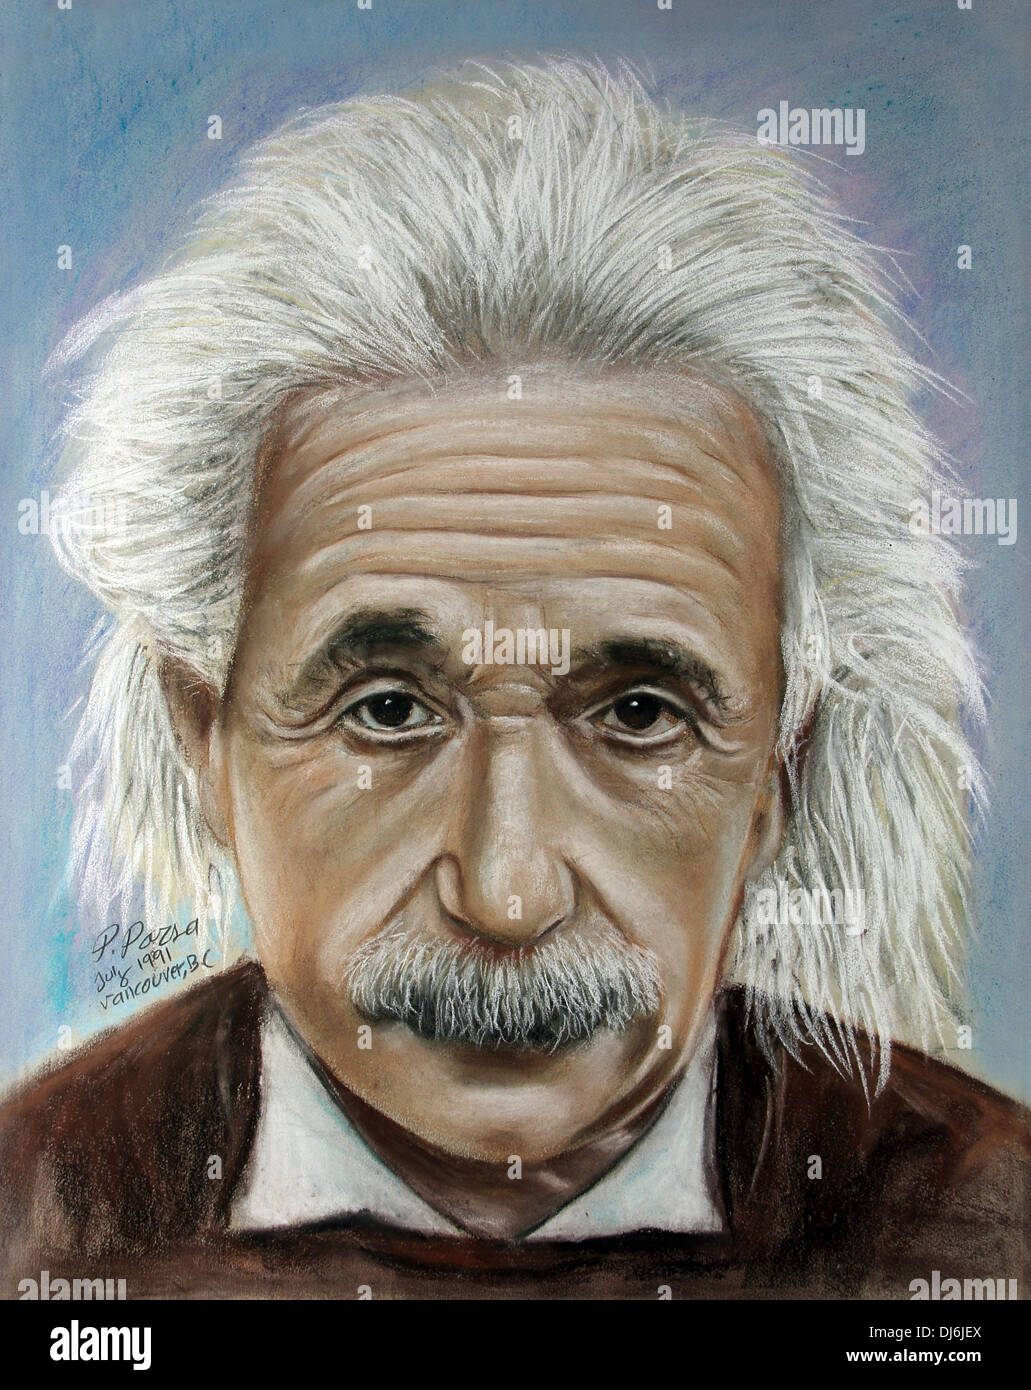 Albert Einstein pastel portrait Stock Photo